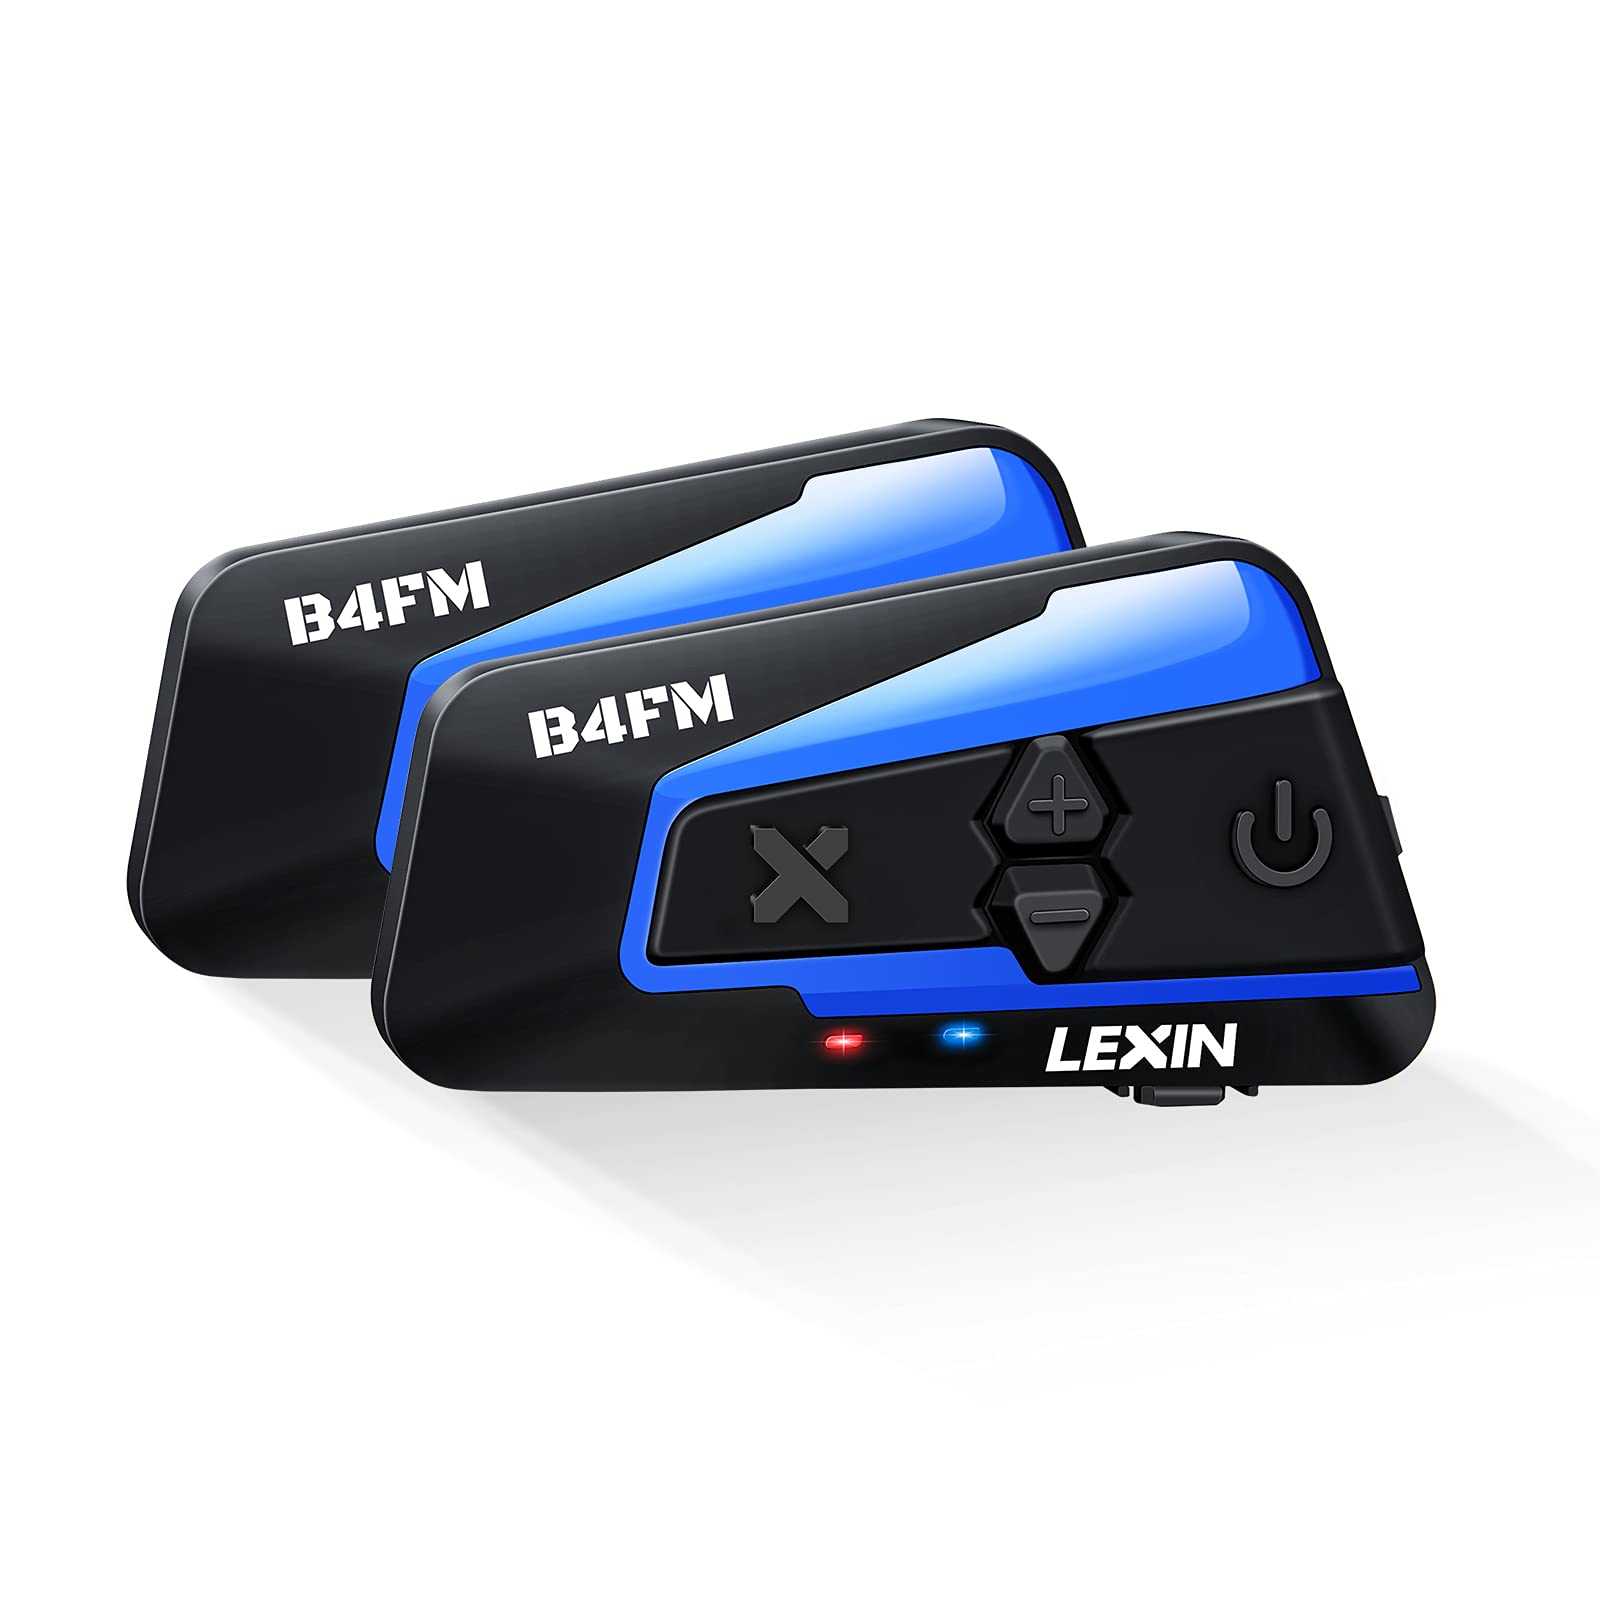 Populaire LEXIN 2X B4FM Intercom Moto Duo pour 2 Casques, Kit Main Libre Moto Bluetooth avec Radio FM, 1-10 Motards Systèmes Communication Partage de Musique, Oreillette Bluetooth pour Casque Moto/Motoneige vhkMZY8Xz juste de l´acheter